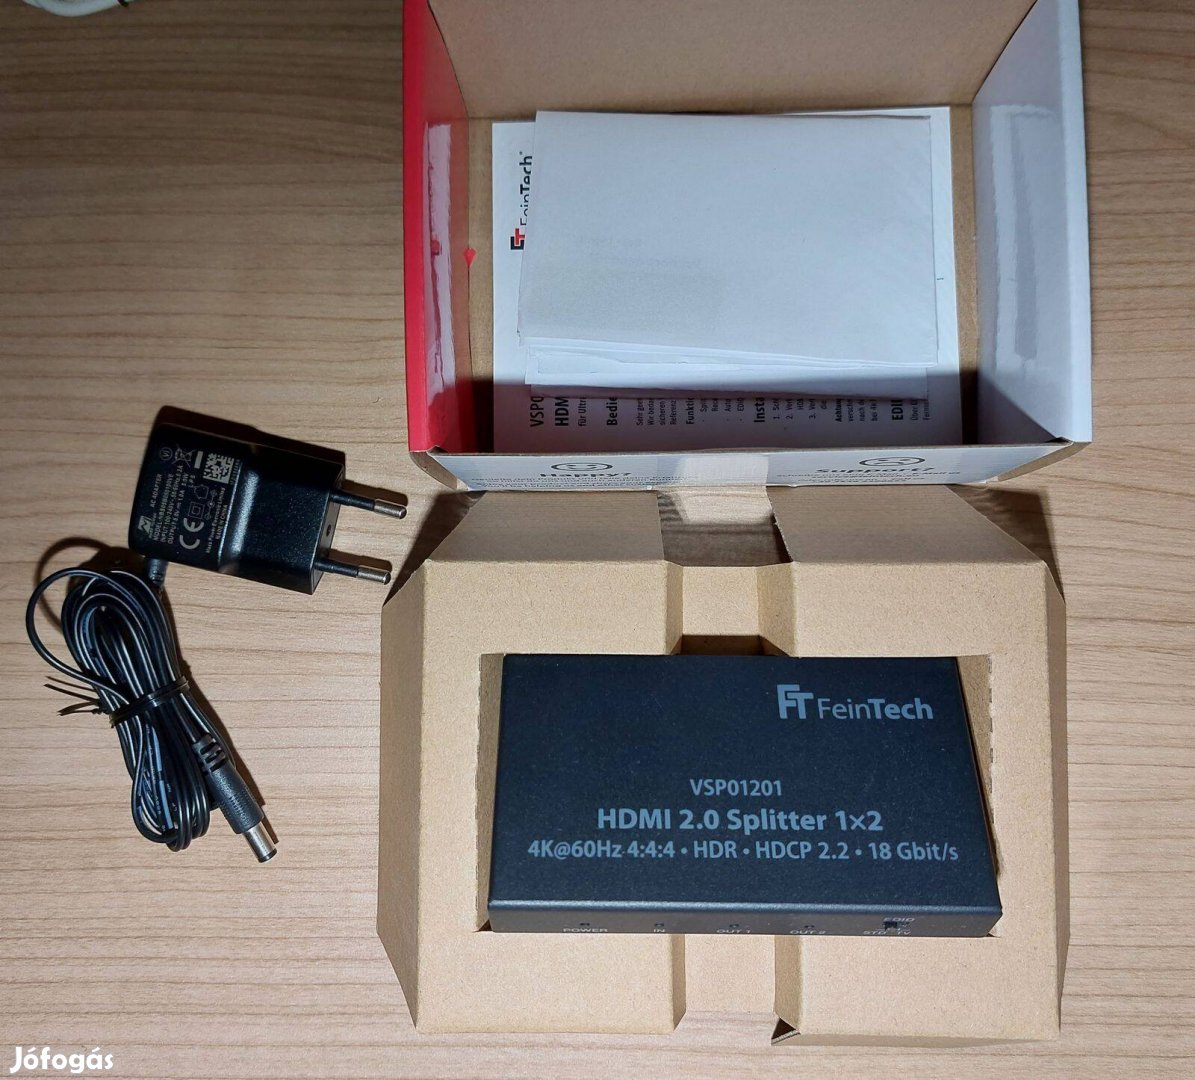 Feintech VSP01201 HDMI 2.0 4K 60Hz 1x2 elosztó leskálázással és EDID k